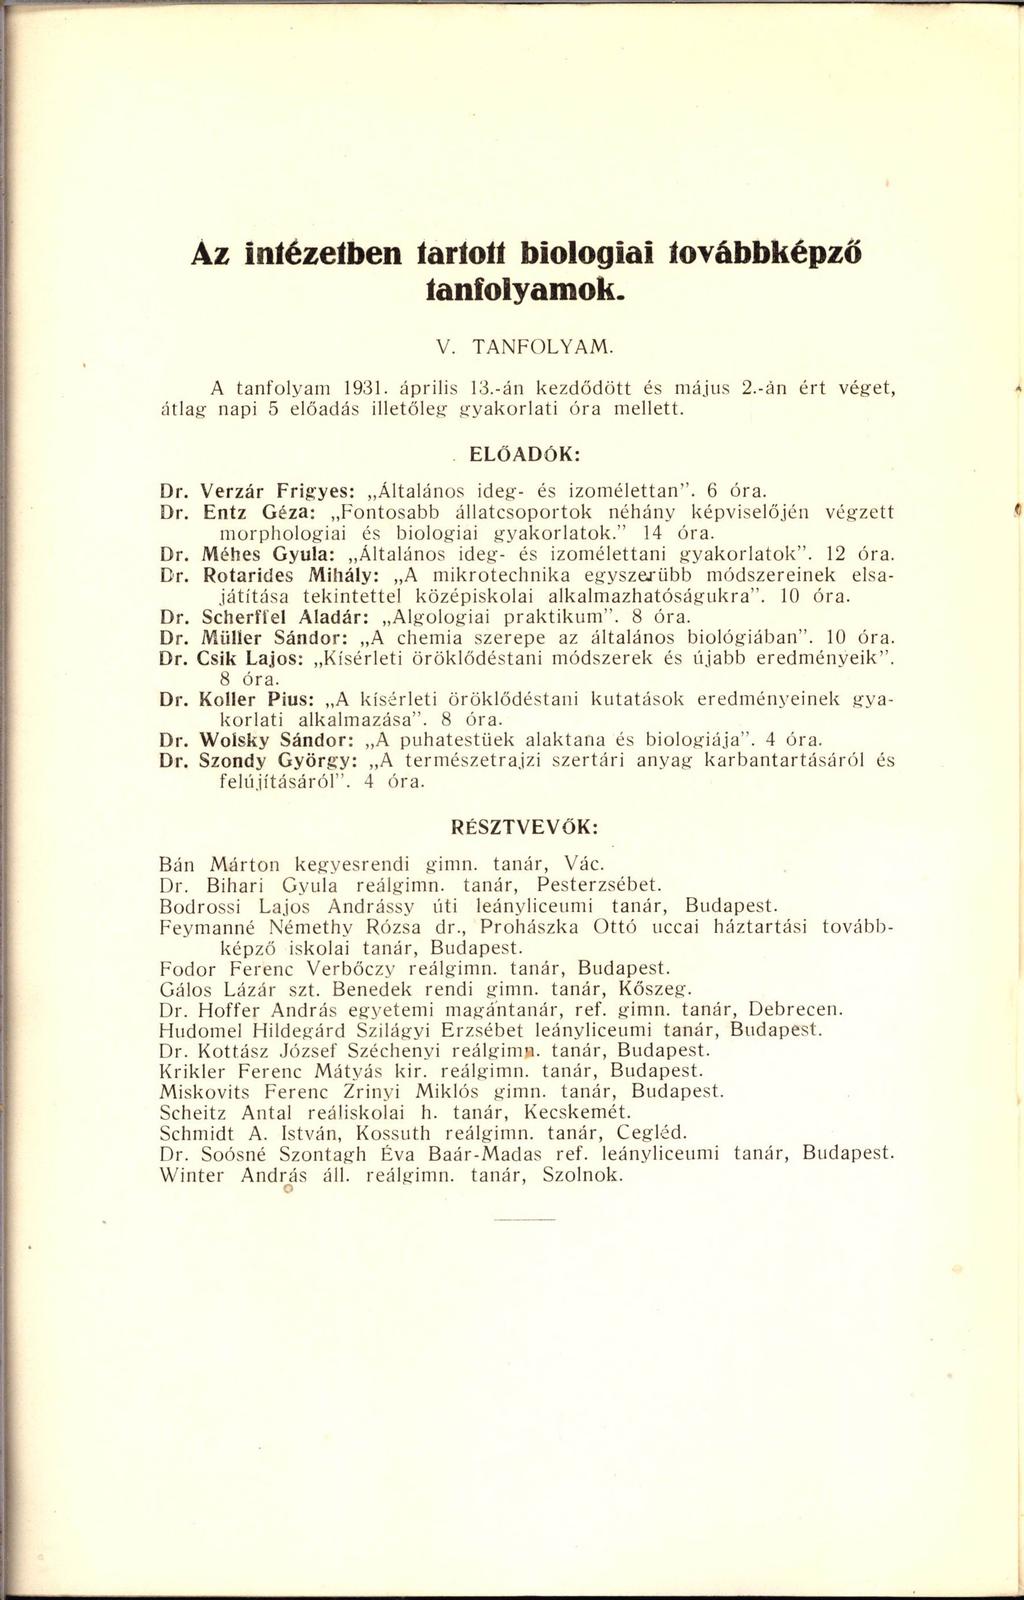 Az Intézetben tartott biológiai továbbképző tanfolyamok. V. TANFOLYAM. A tanfolyam 1931. április 13.-án kezdődött és május 2.-án ért véget, átlag napi 5 előadás illetőleg gyakorlati óra mellett.